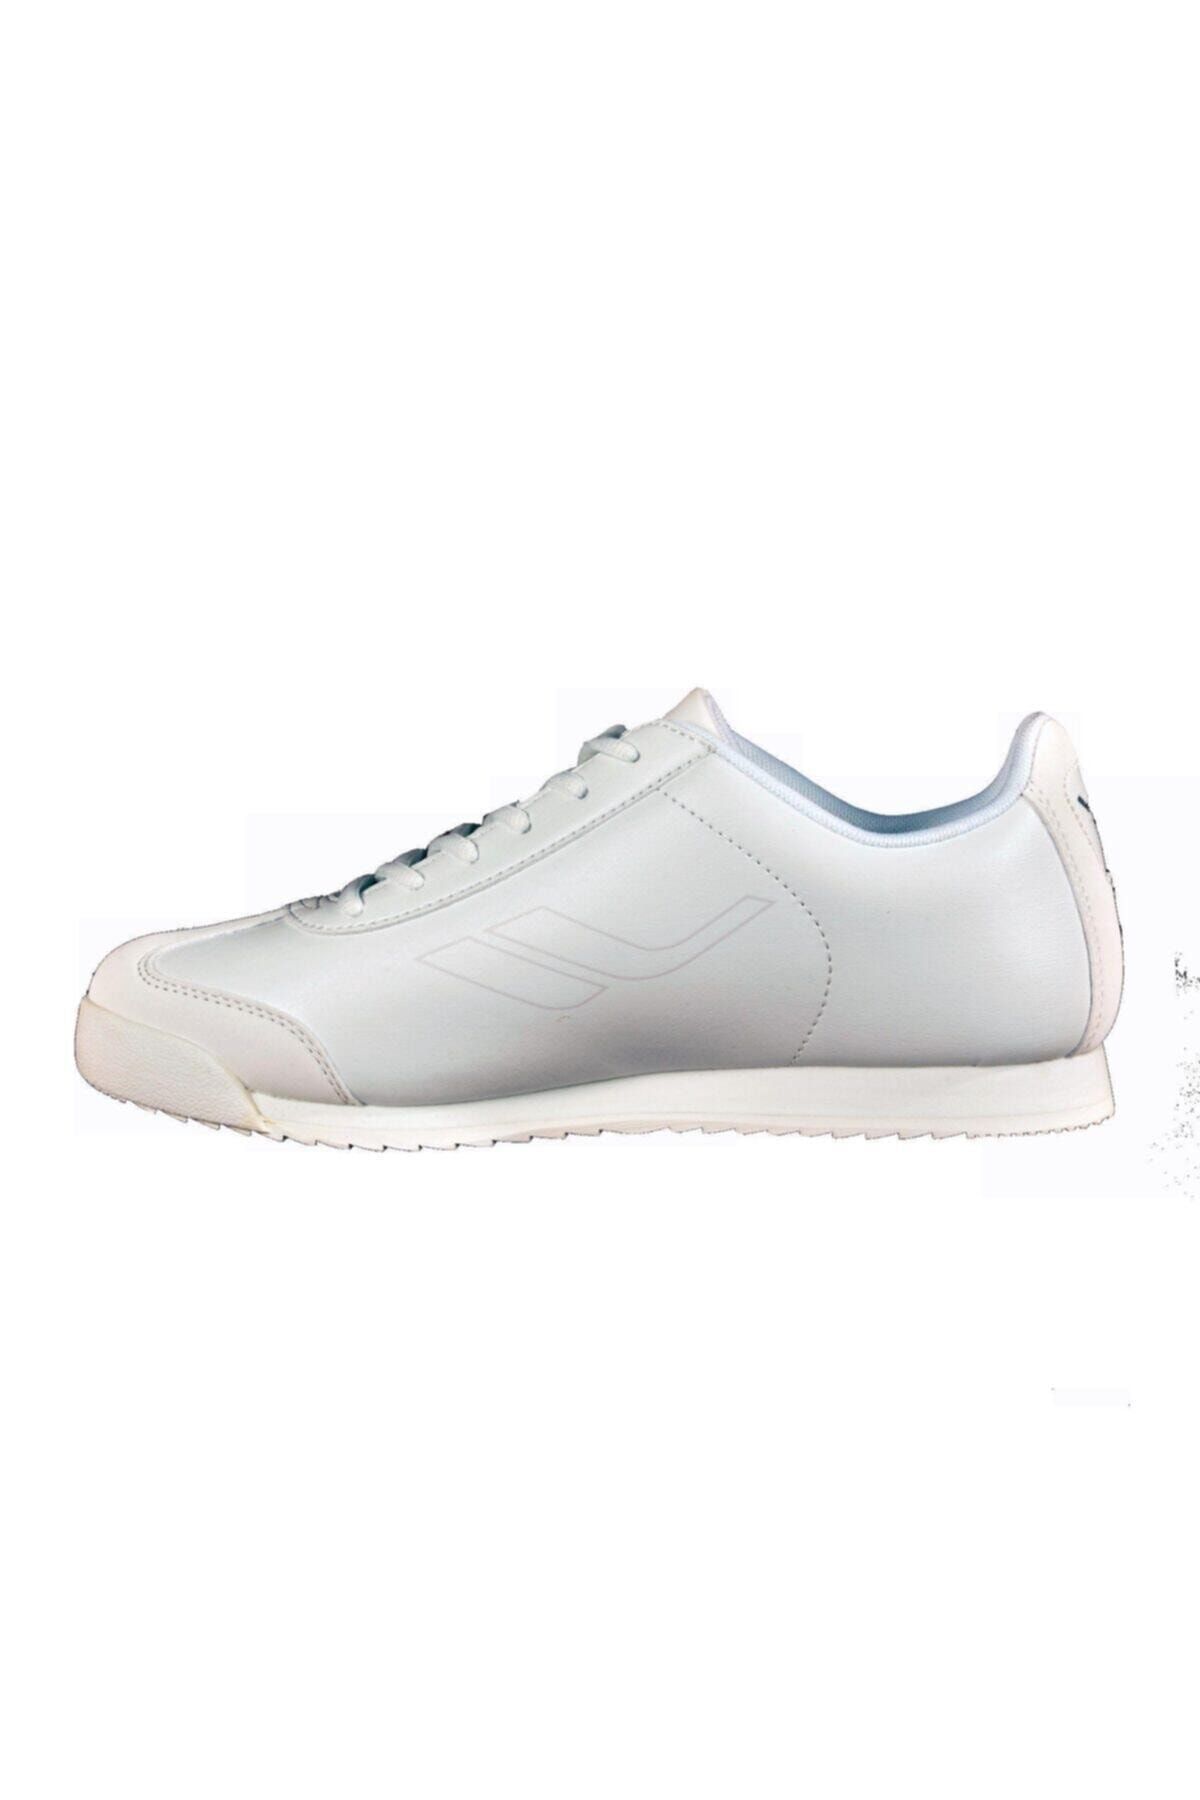 Lescon Erkek Beyaz Sneaker Ayakkabı L-6529